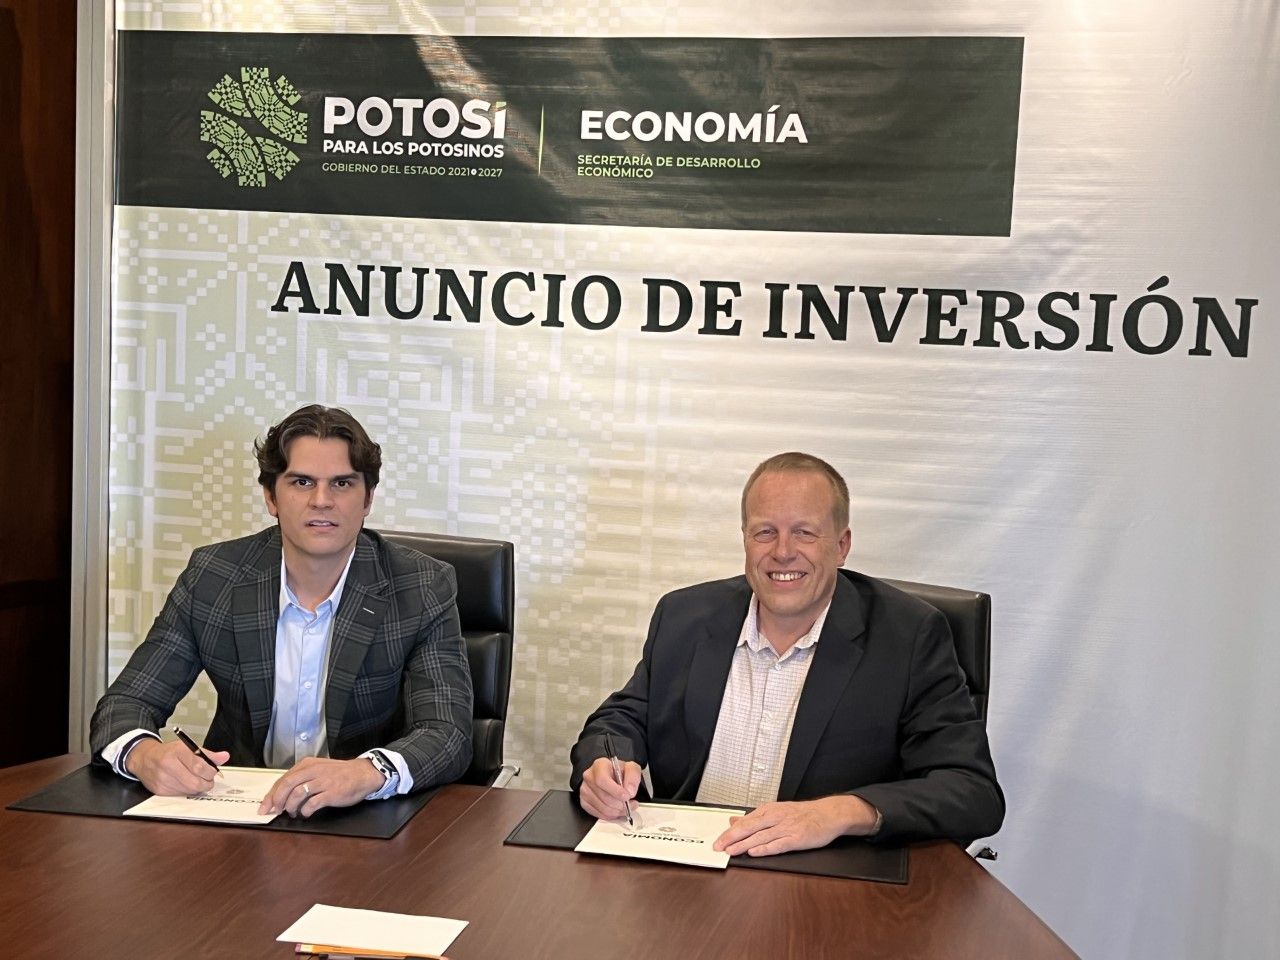 Juan Carlos Valladares Eichelmann, Minister für wirtschaftliche Entwicklung, und Olaf Voss, CEO von thyssenkrupp Materials de Mexico,  bei der Unterzeichnung des Vertrags.